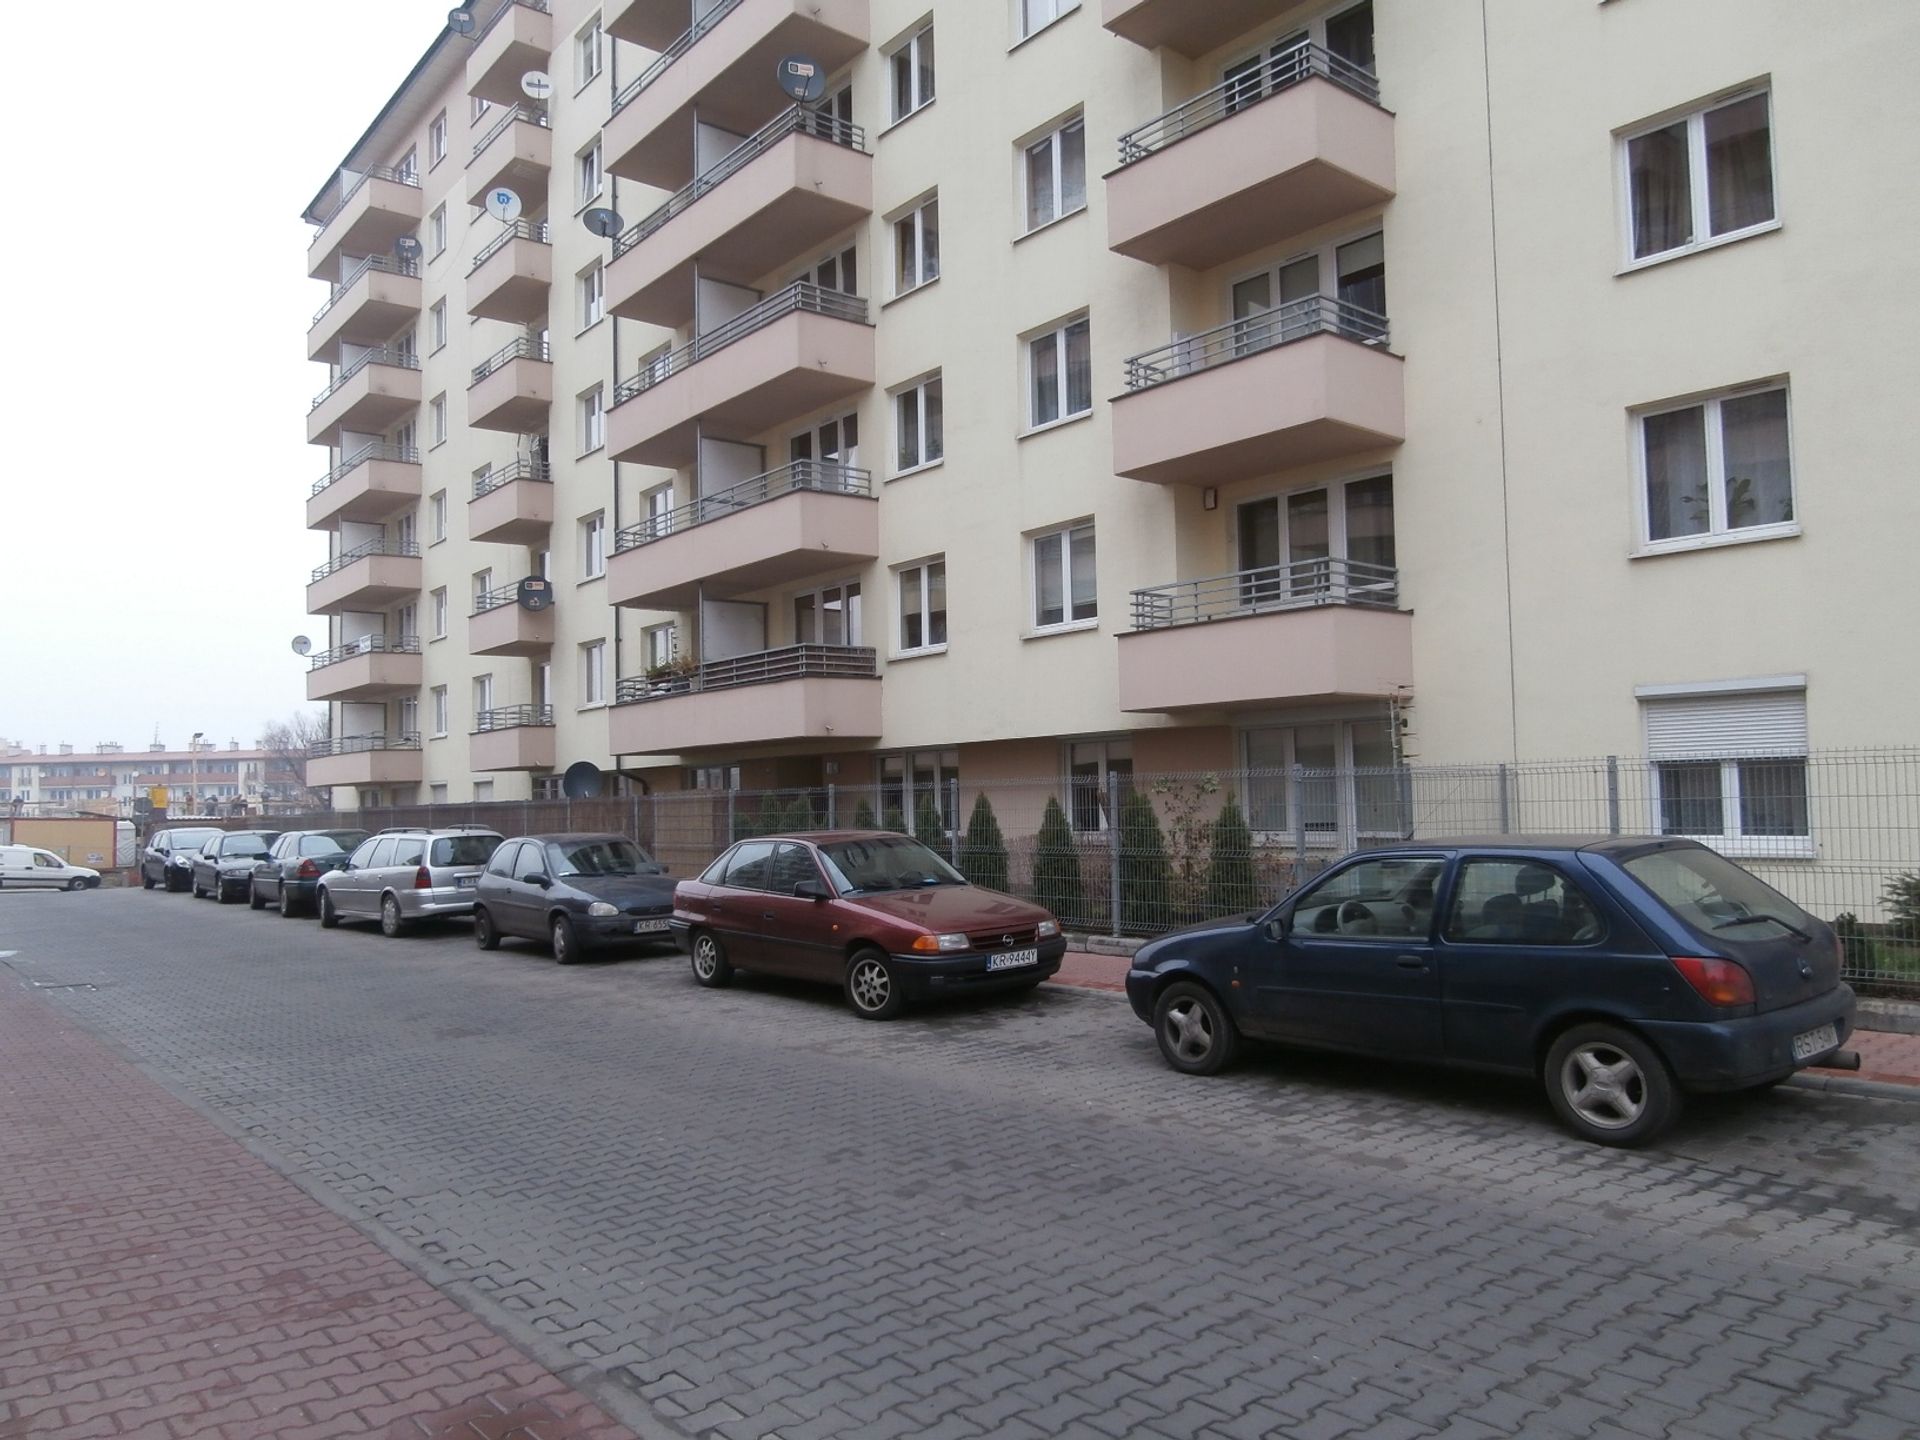  Ceny mieszkań w Krakowie wciąż rosną